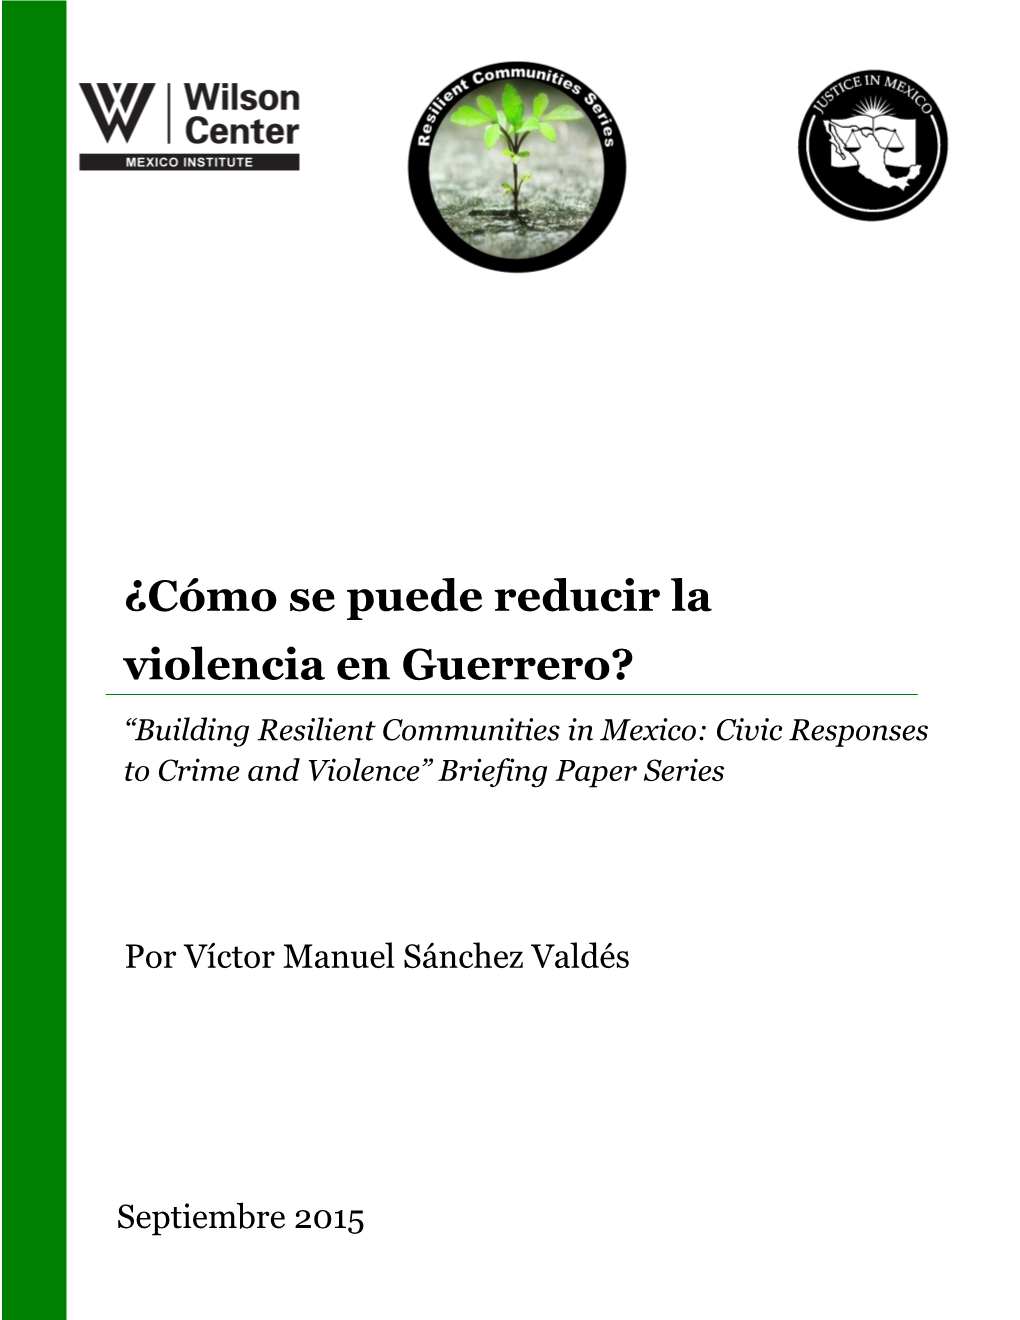 ¿Cómo Se Puede Reducir La Violencia En Guerrero? “Building Resilient Communities in Mexico: Civic Responses to Crime and Violence” Briefing Paper Series